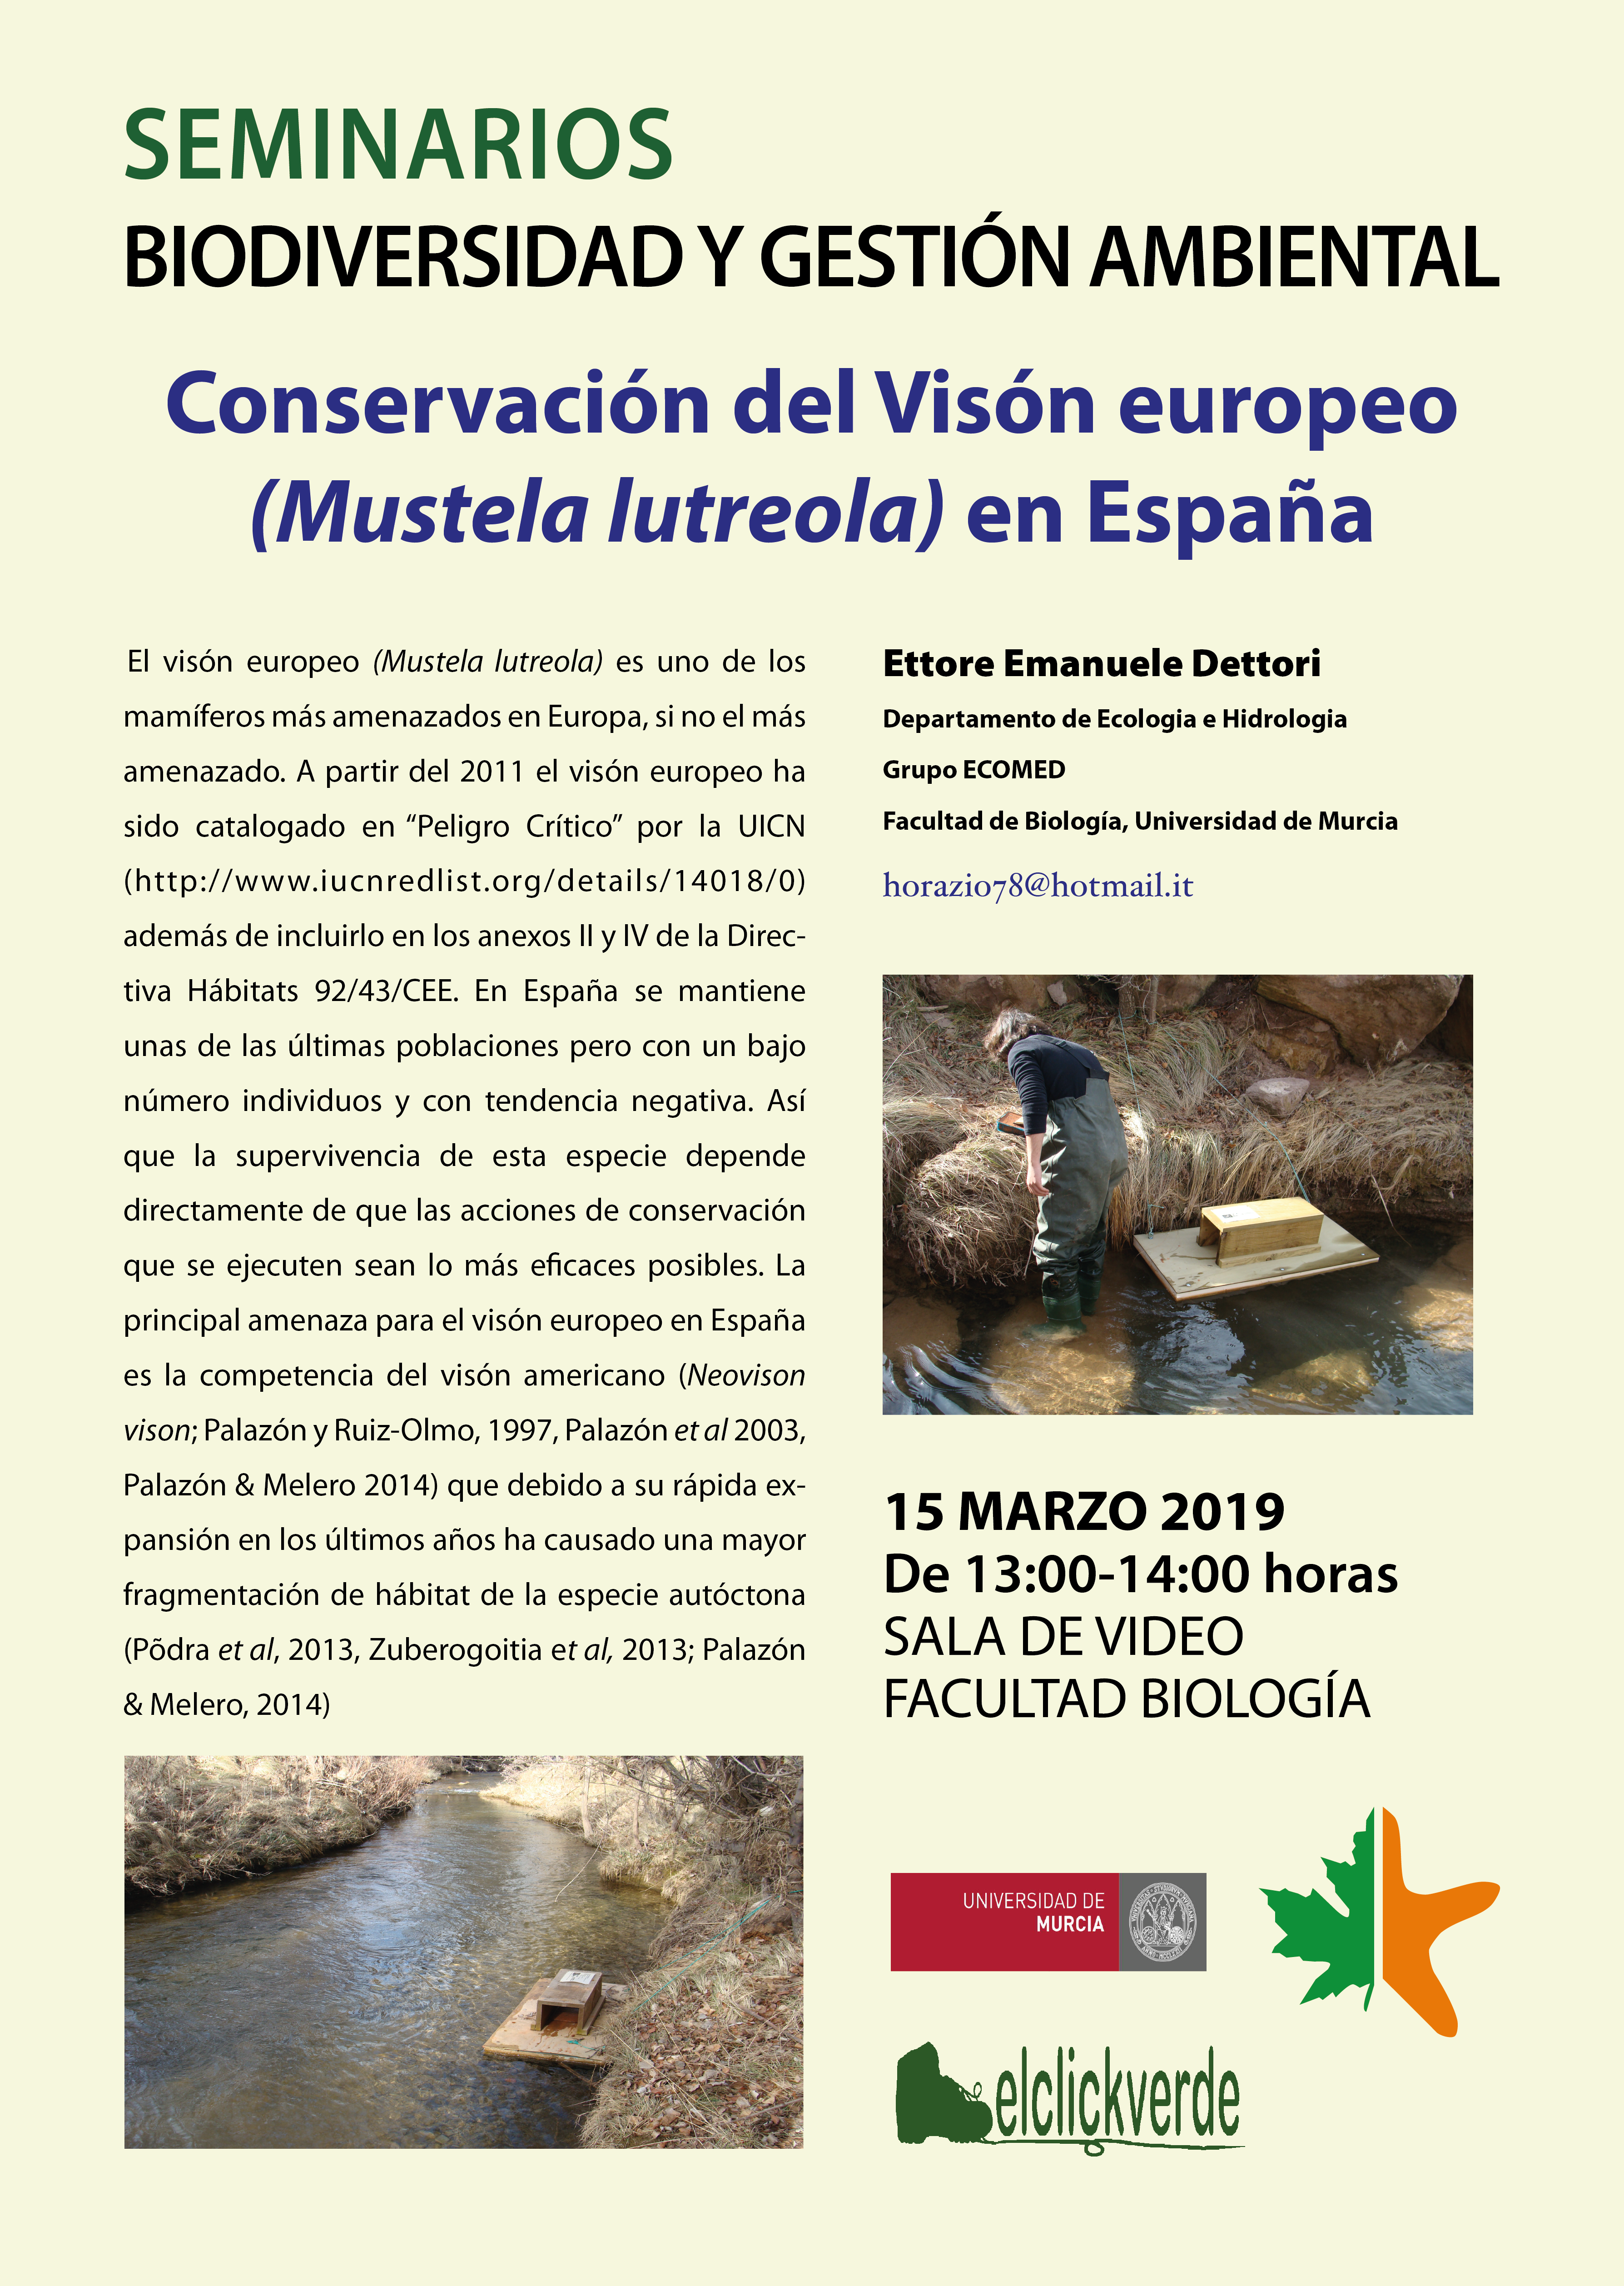 Conservación del visón europeo en España, con la UMU